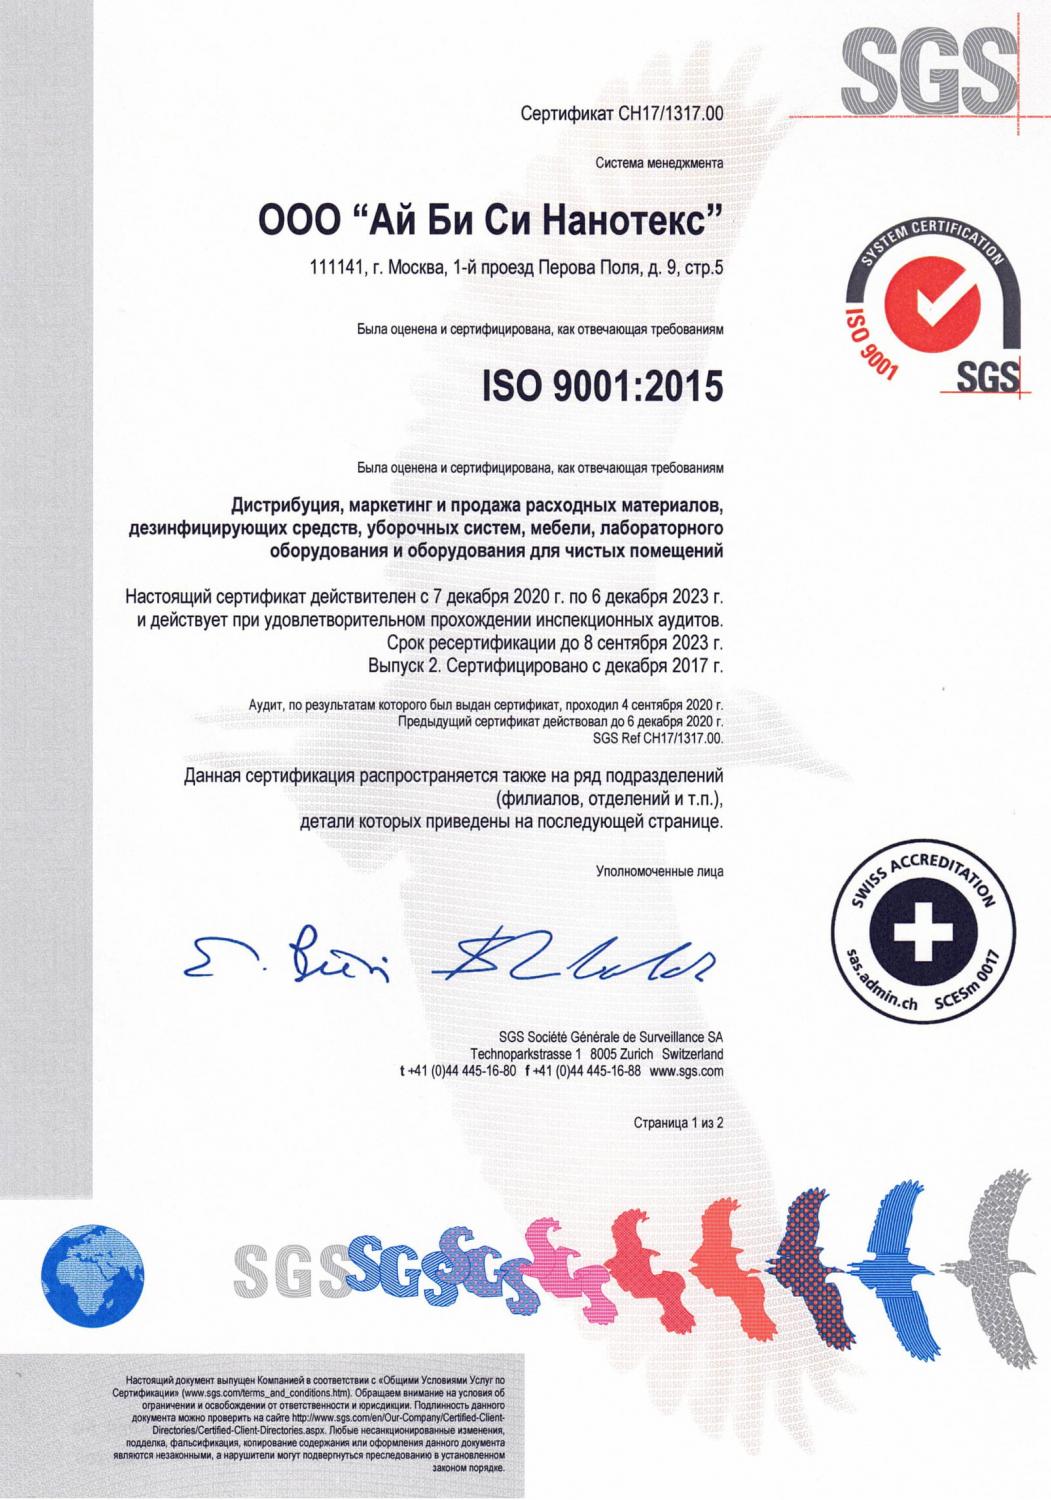 По результатам сертификационного аудита SGS система менеджмента качества IBC Nanotex признана соответствующей требованиям международного стандарта ISO 9001:2015.